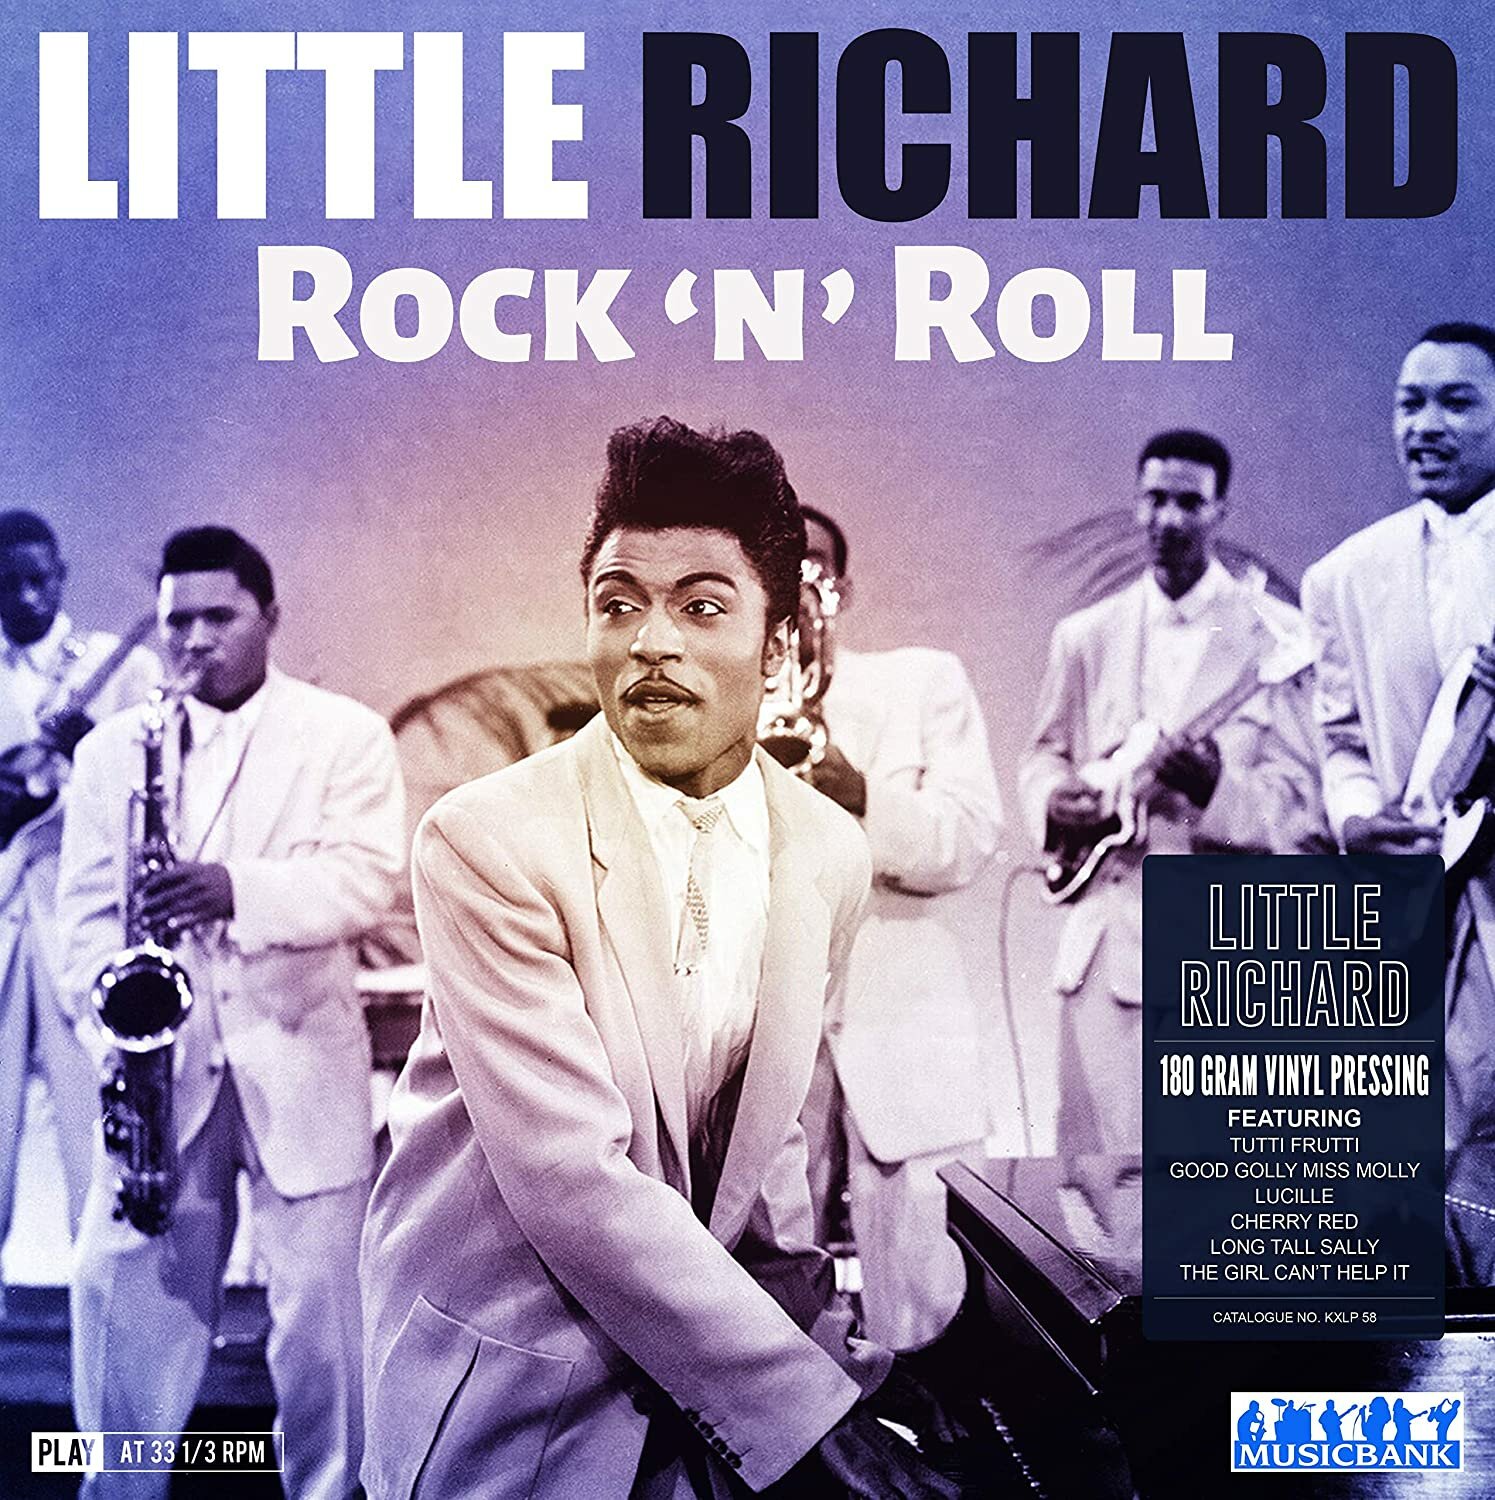 Little Richard "Виниловая пластинка Little Richard Rock 'N' Roll"